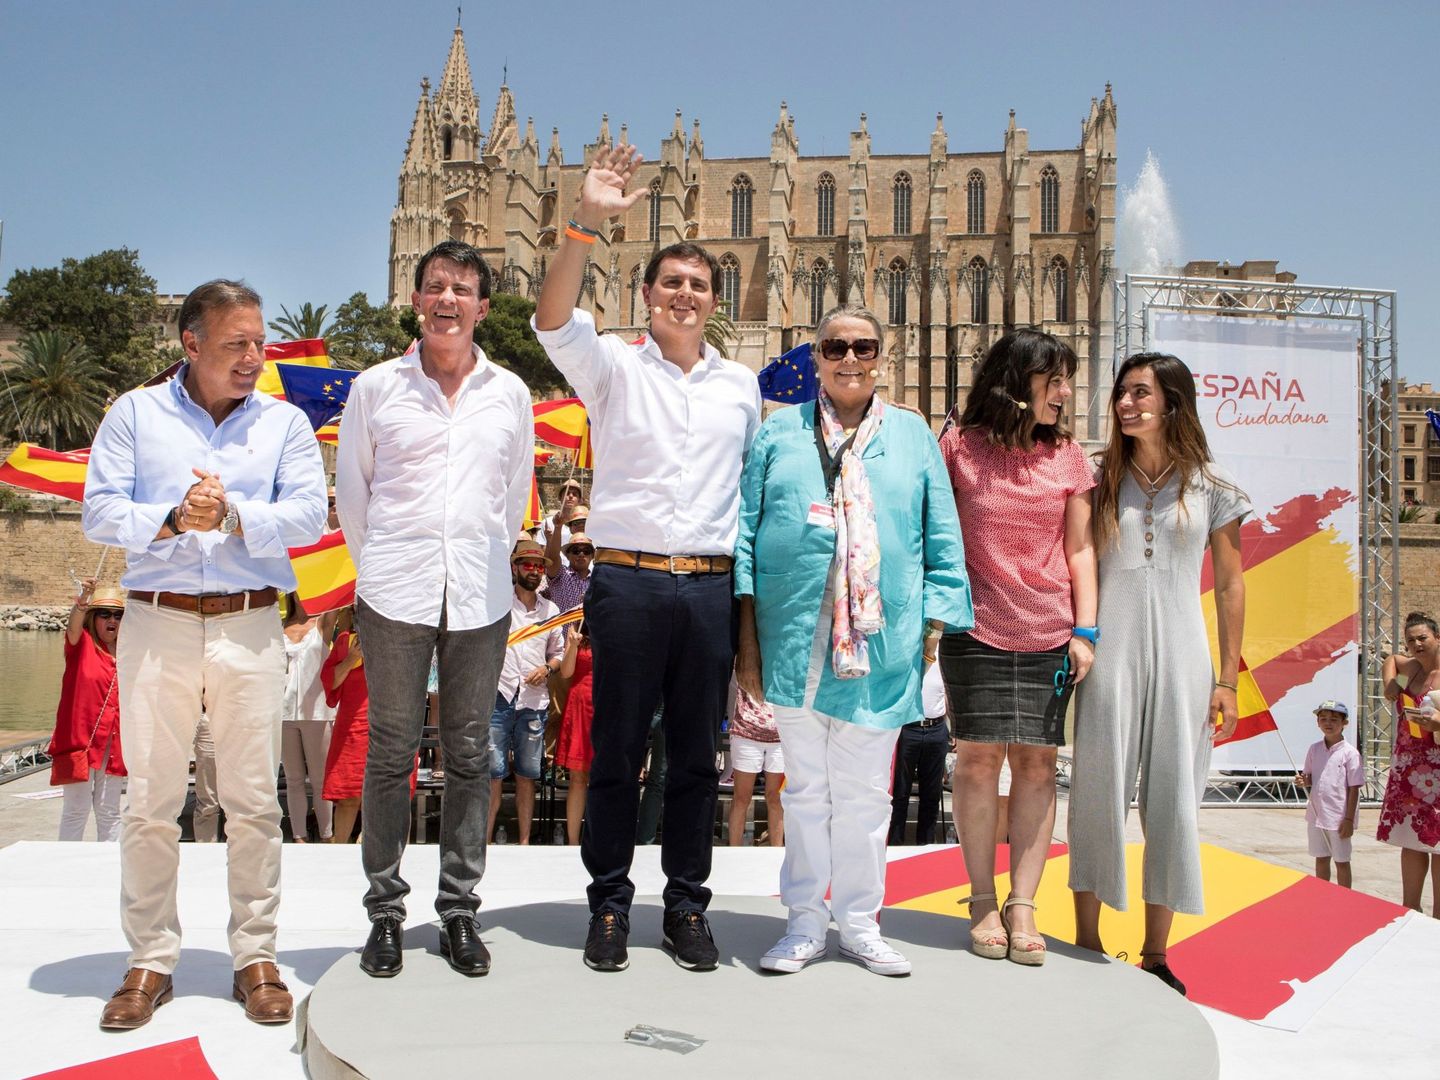 El presidente de Ciudadanos, Albert Rivera, acompañado por el ex primer ministro francés Manuel Valls en el acto de la Plataforma España Ciudadana en Palma de Mallorca. (EFE)